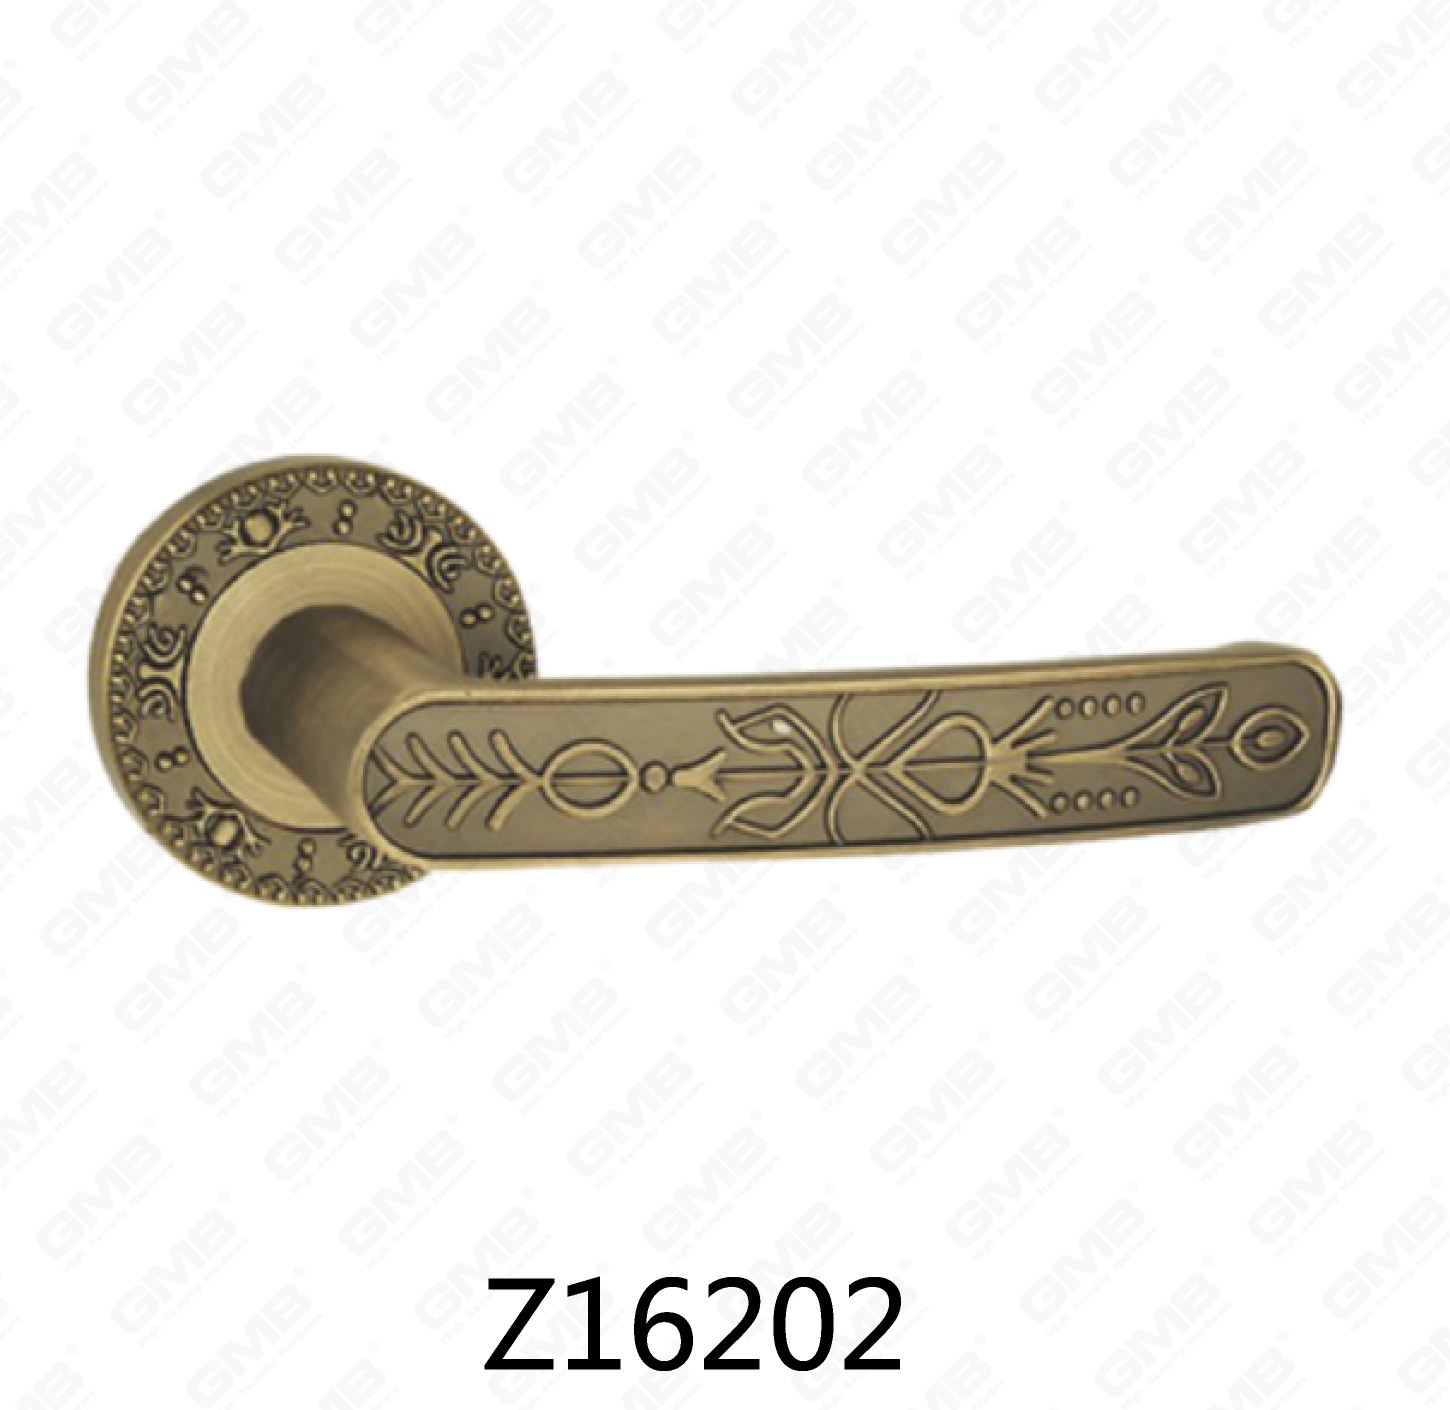 ידית דלת רוזטה מסגסוגת אבץ של Zamak עם רוזטה עגולה (Z16202)